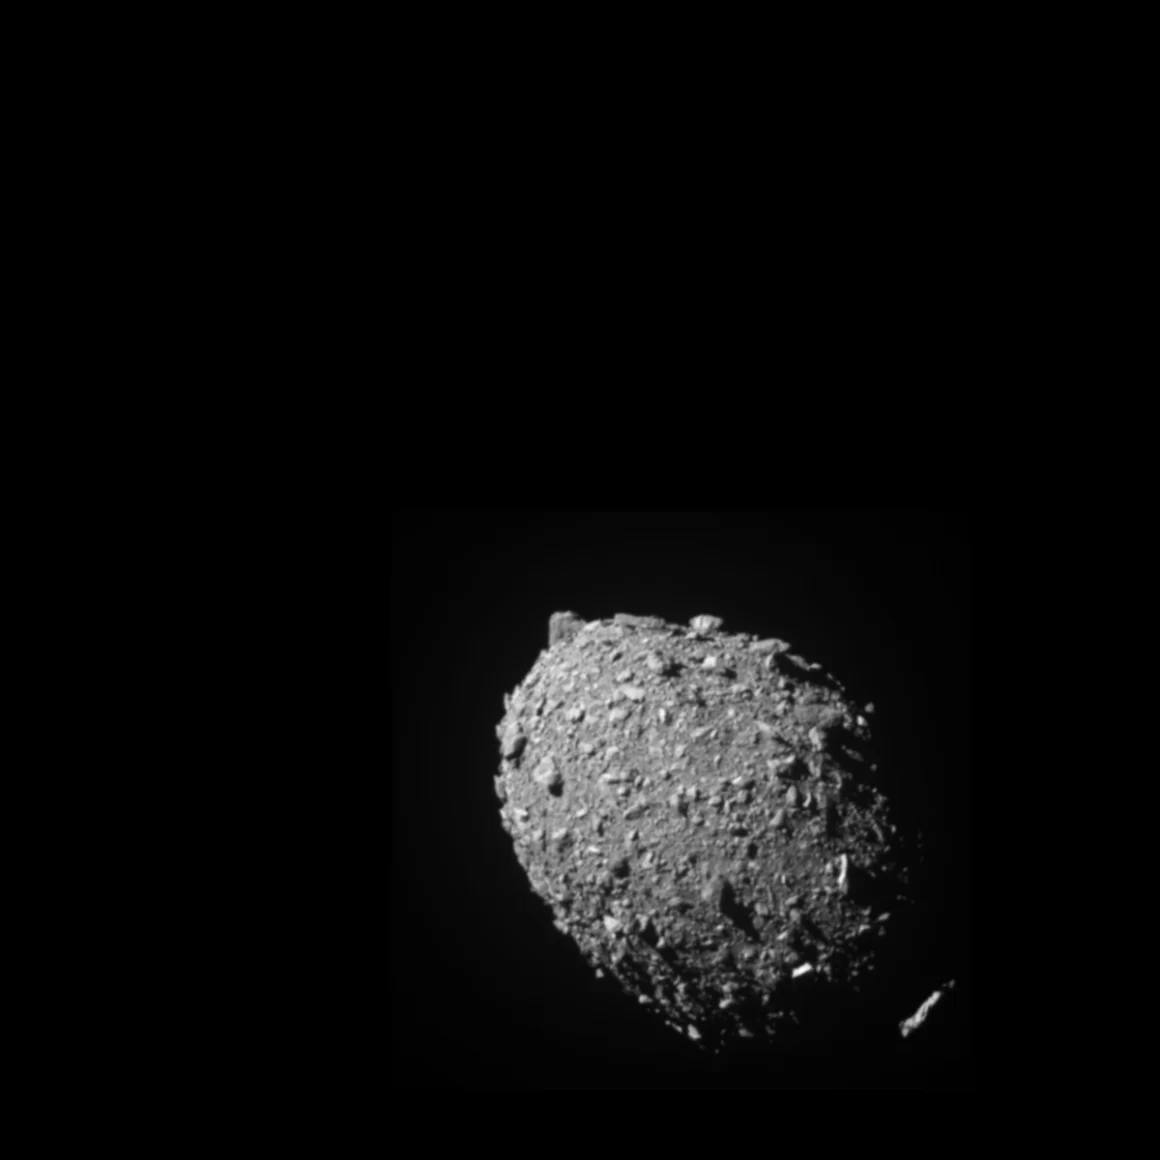 La sonda DART ha colpito l'asteroide Dimorphos in primo piano nella foto